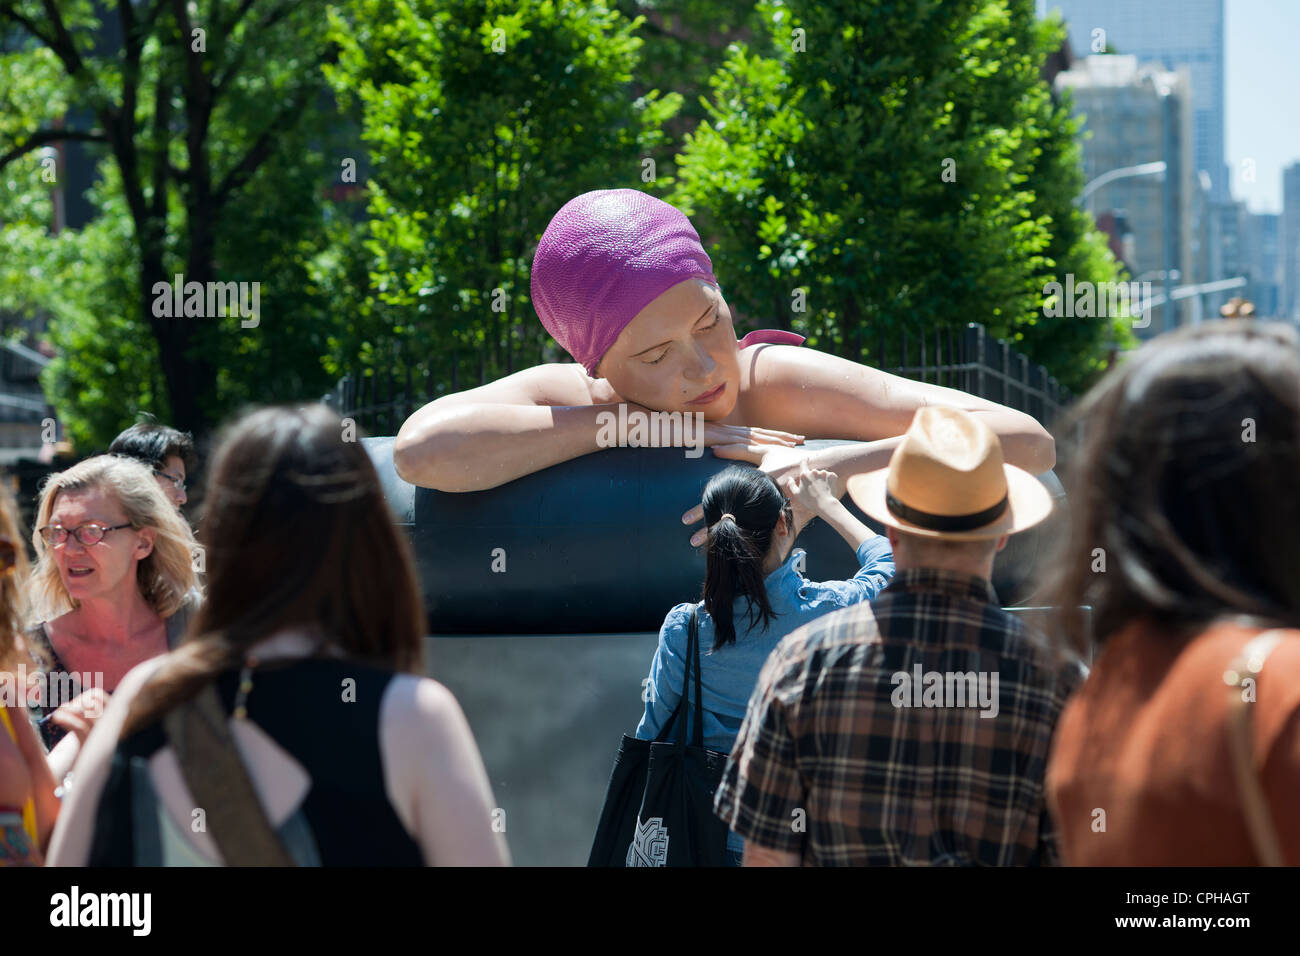 'SURVIE de Serena', une sculpture monumentale de l'artiste Carole Feuerman est dévoilé dans Soho à New York Banque D'Images